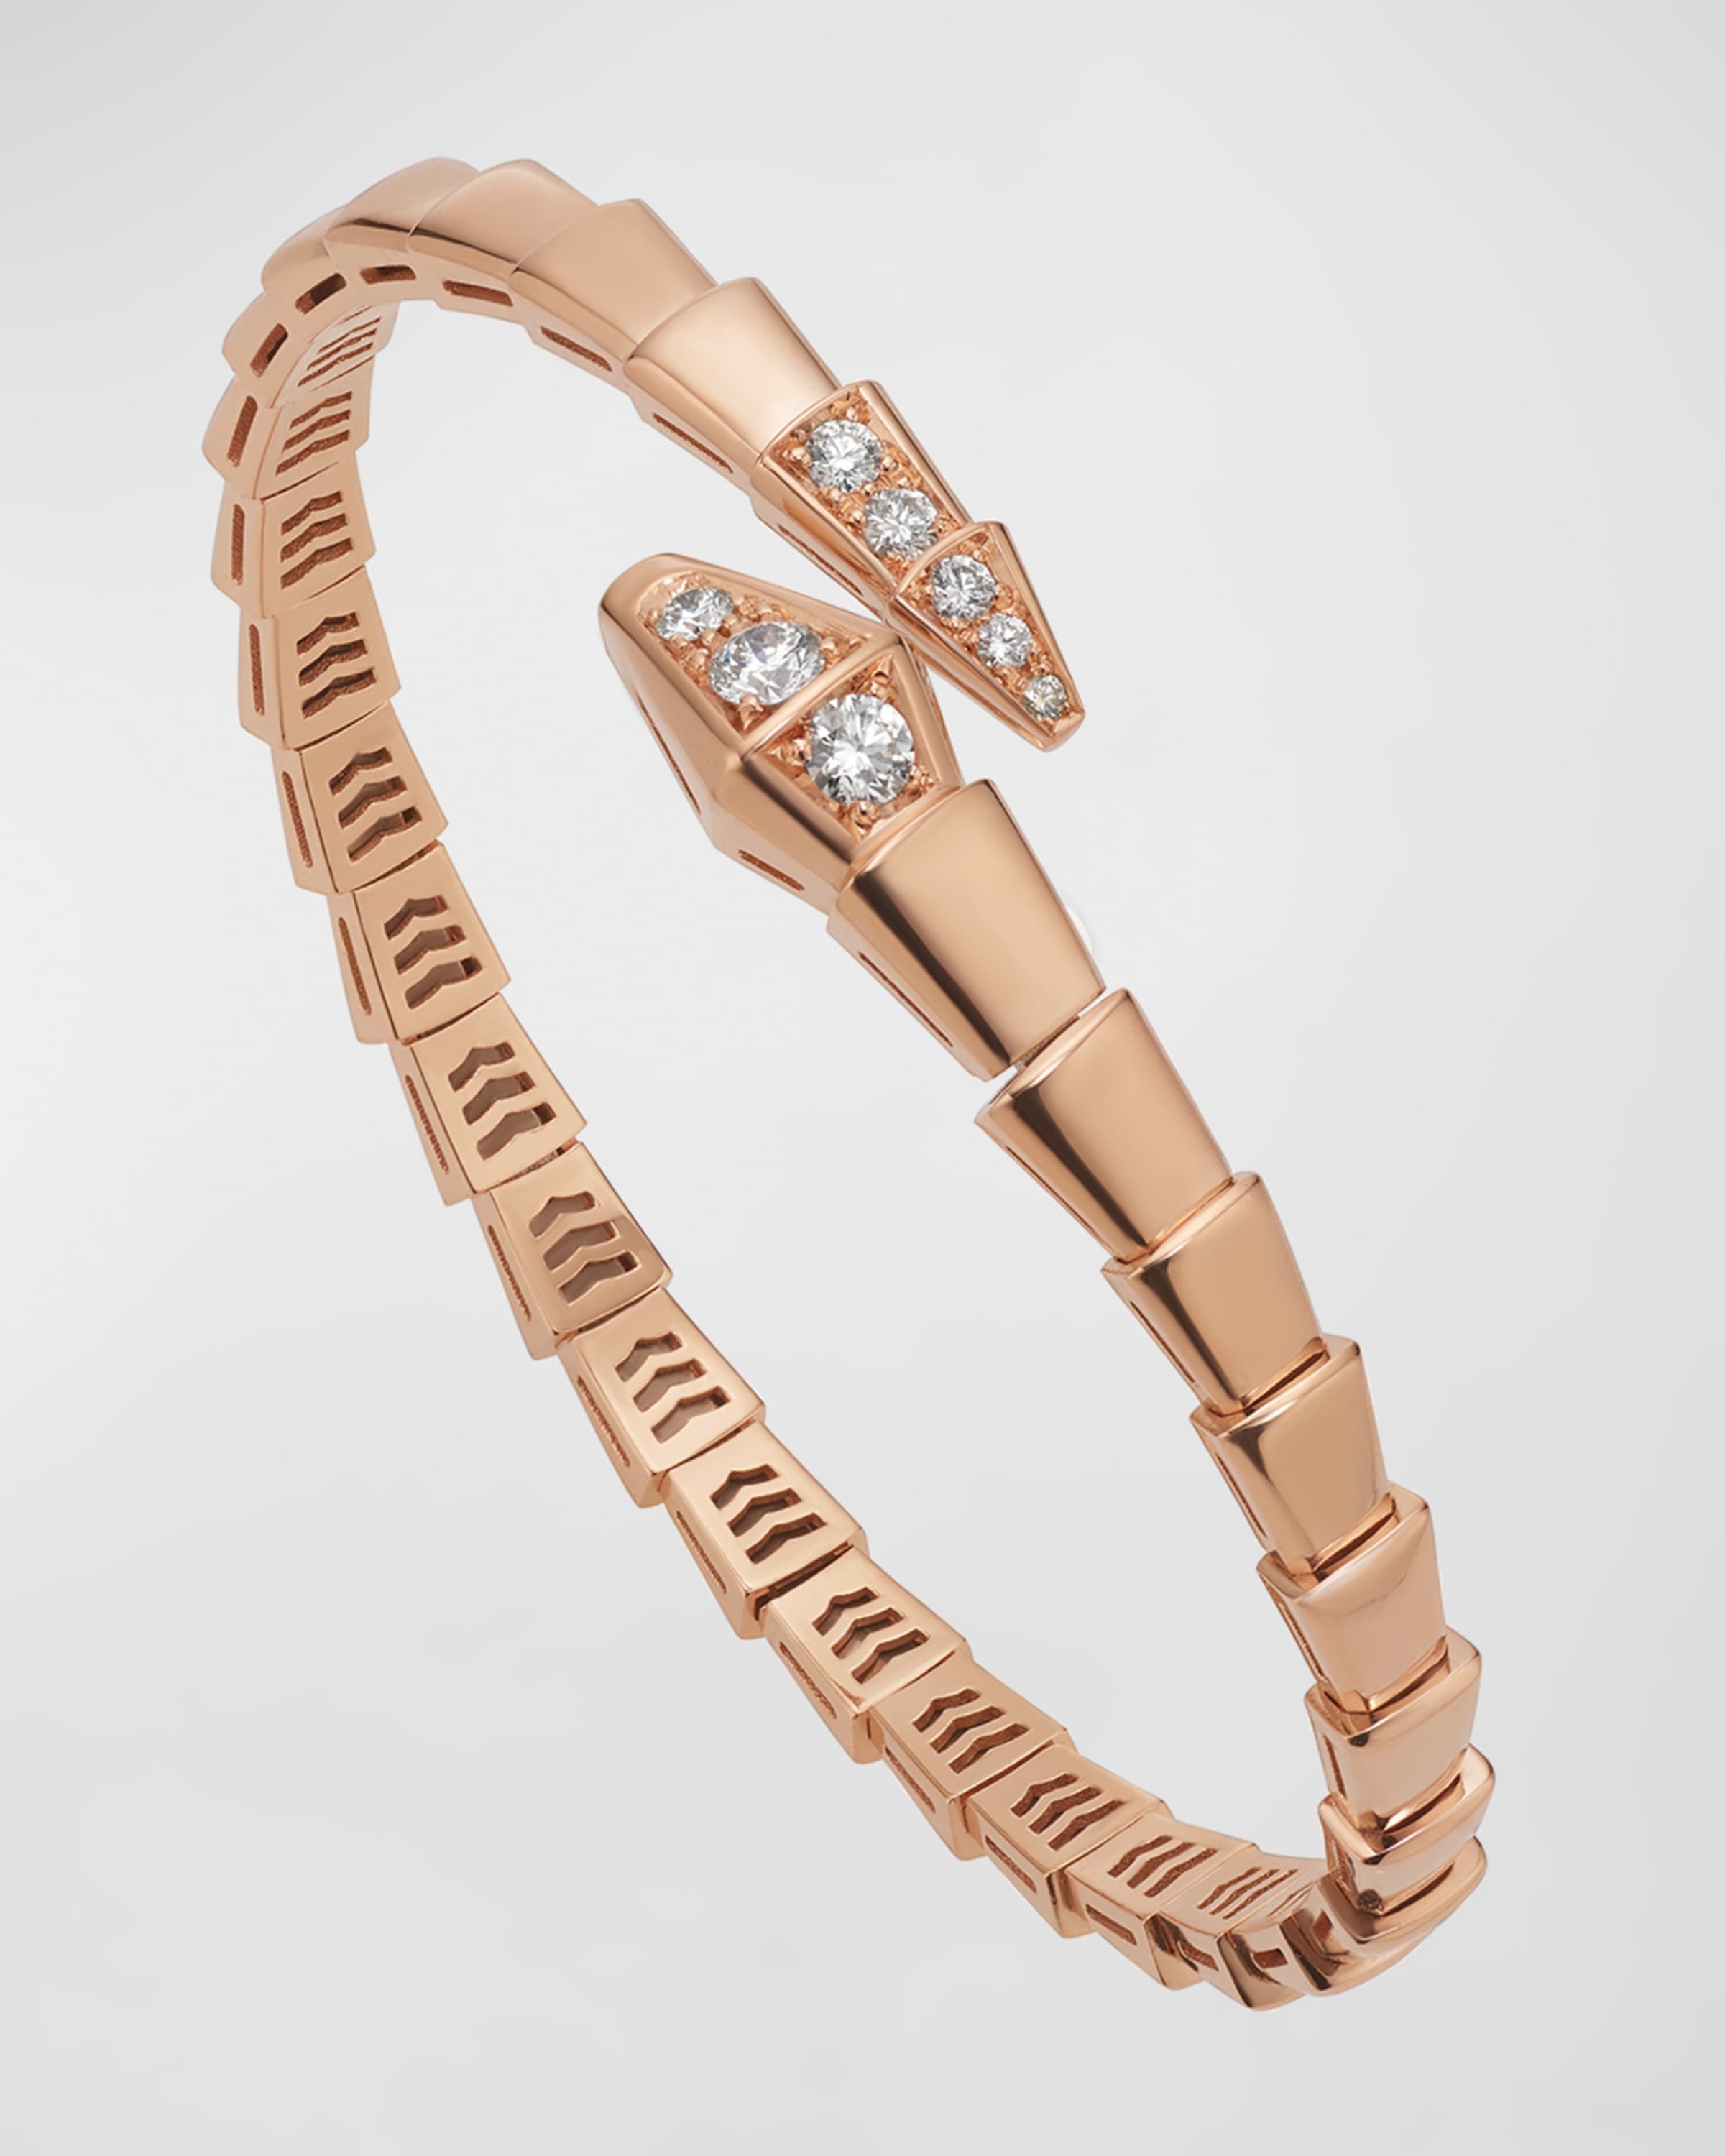 Serpenti Viper Bracelet in 18k Rose Gold and Diamonds, Size L - 3